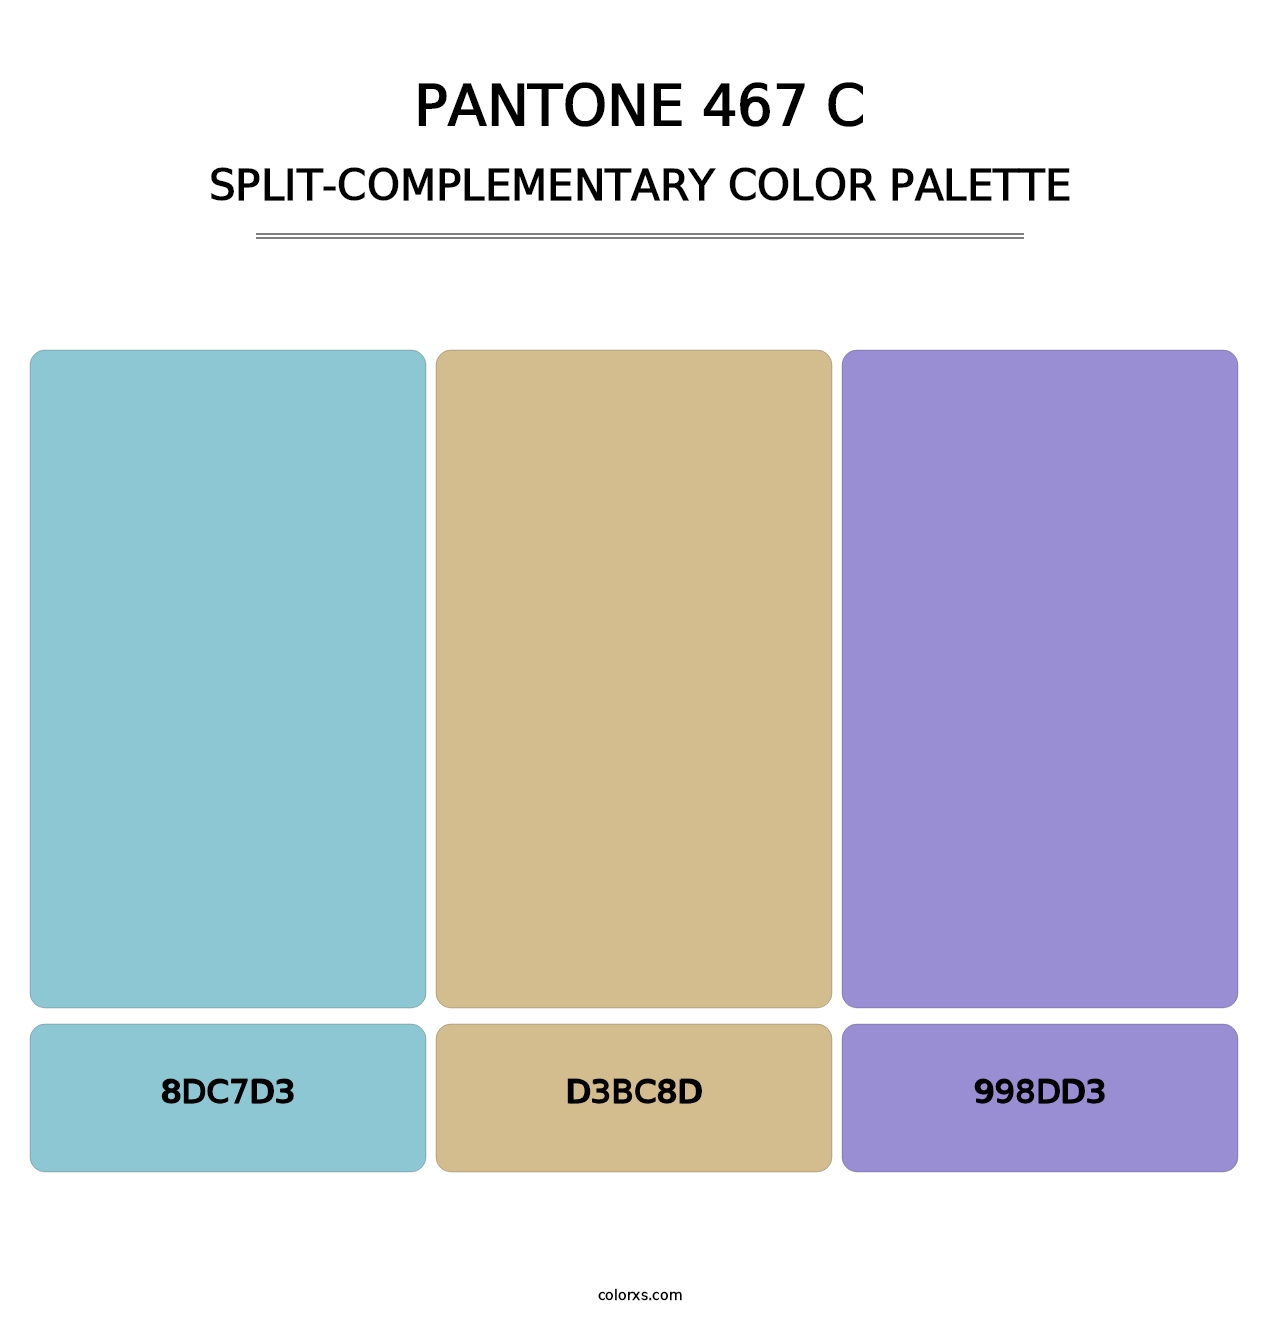 PANTONE 467 C - Split-Complementary Color Palette